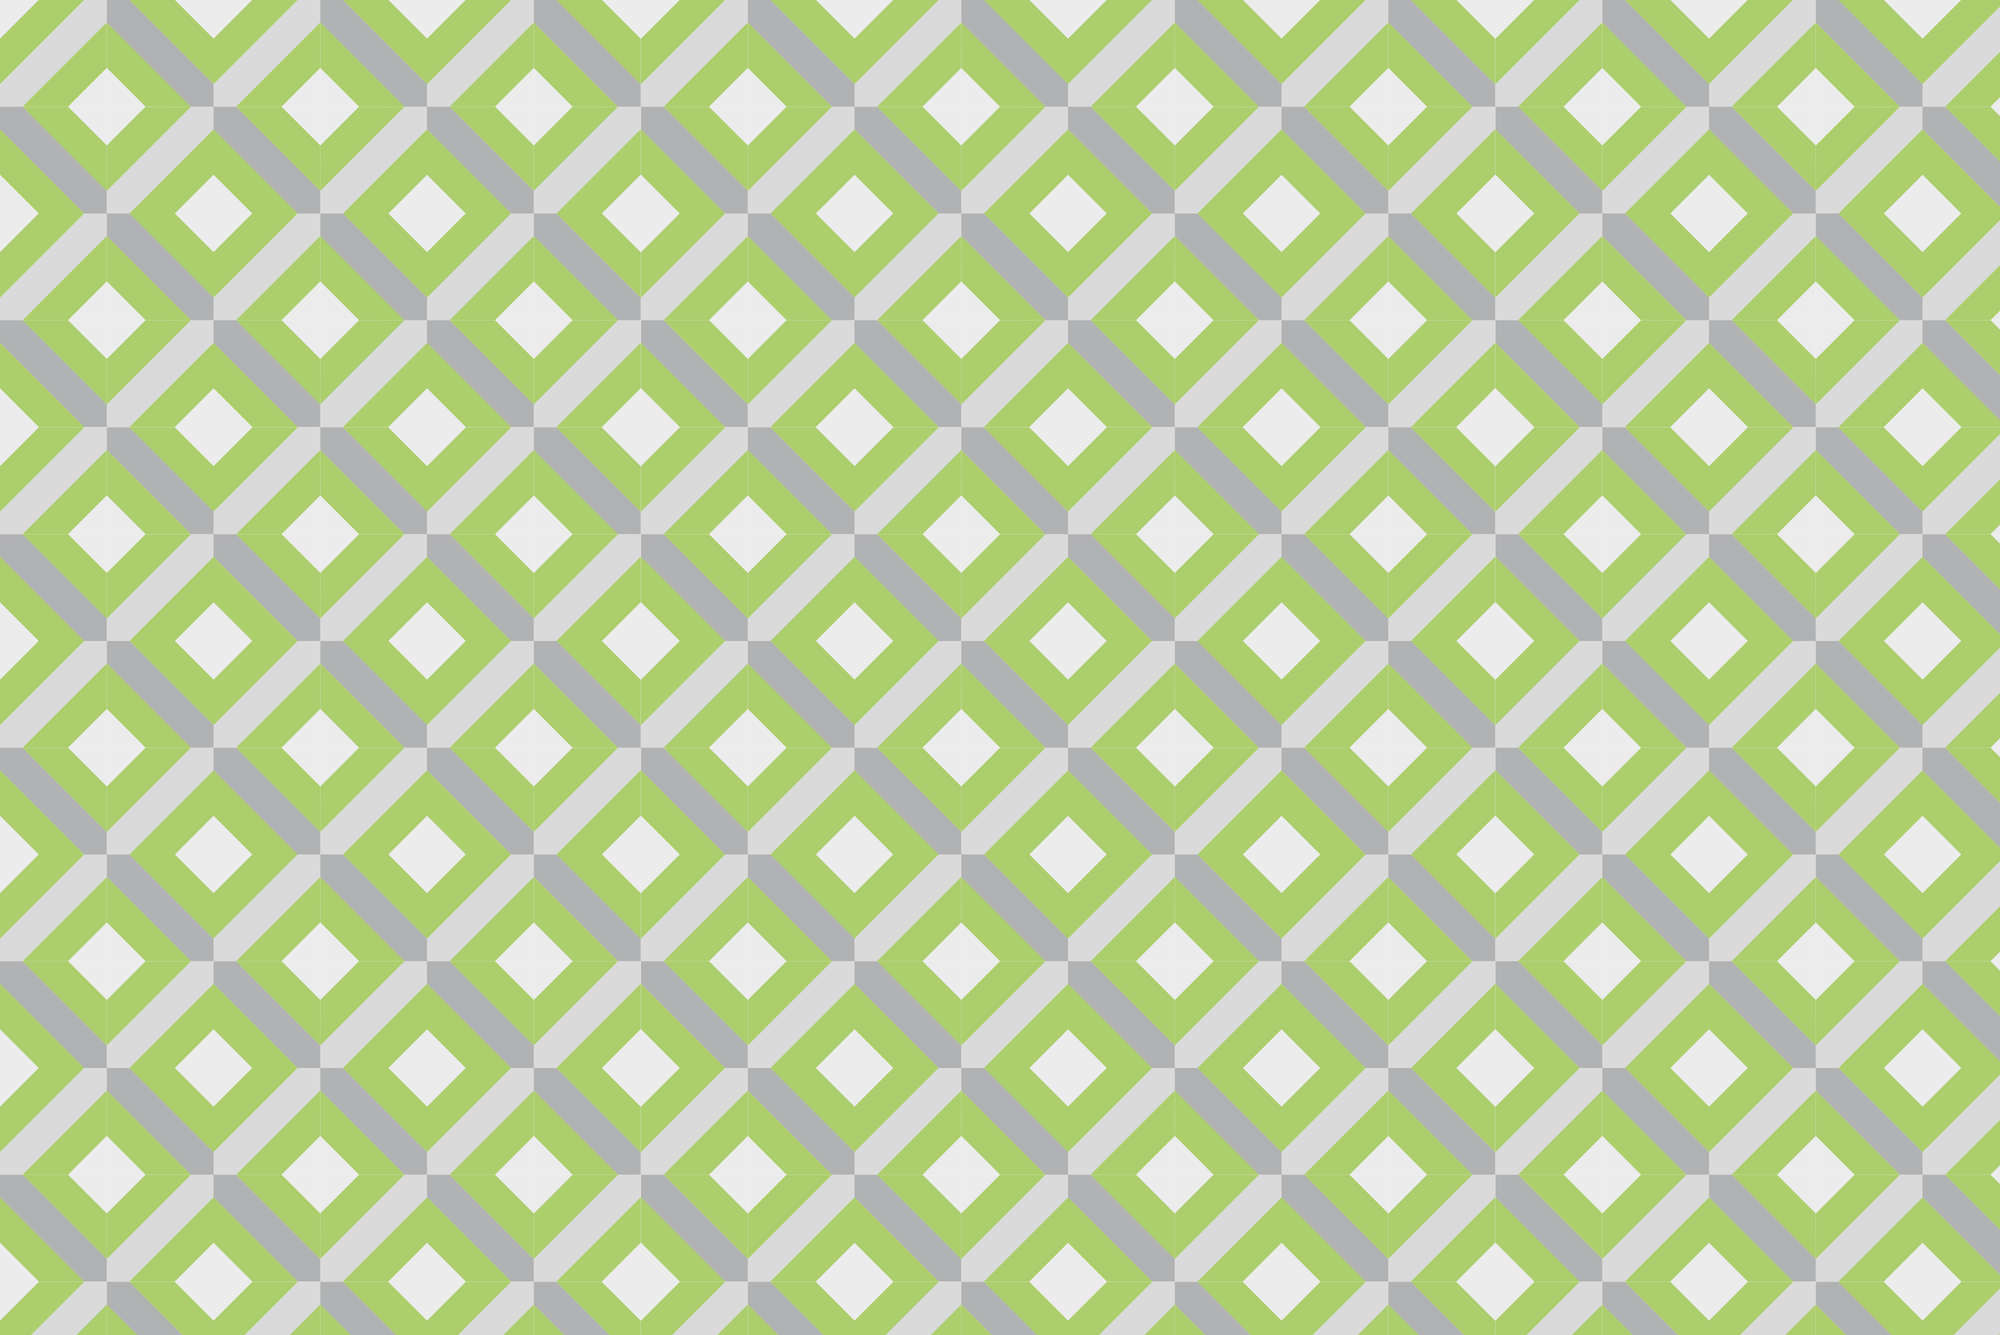             Motivo scatola di carta da parati con quadratini verdi su vello liscio madreperlato
        